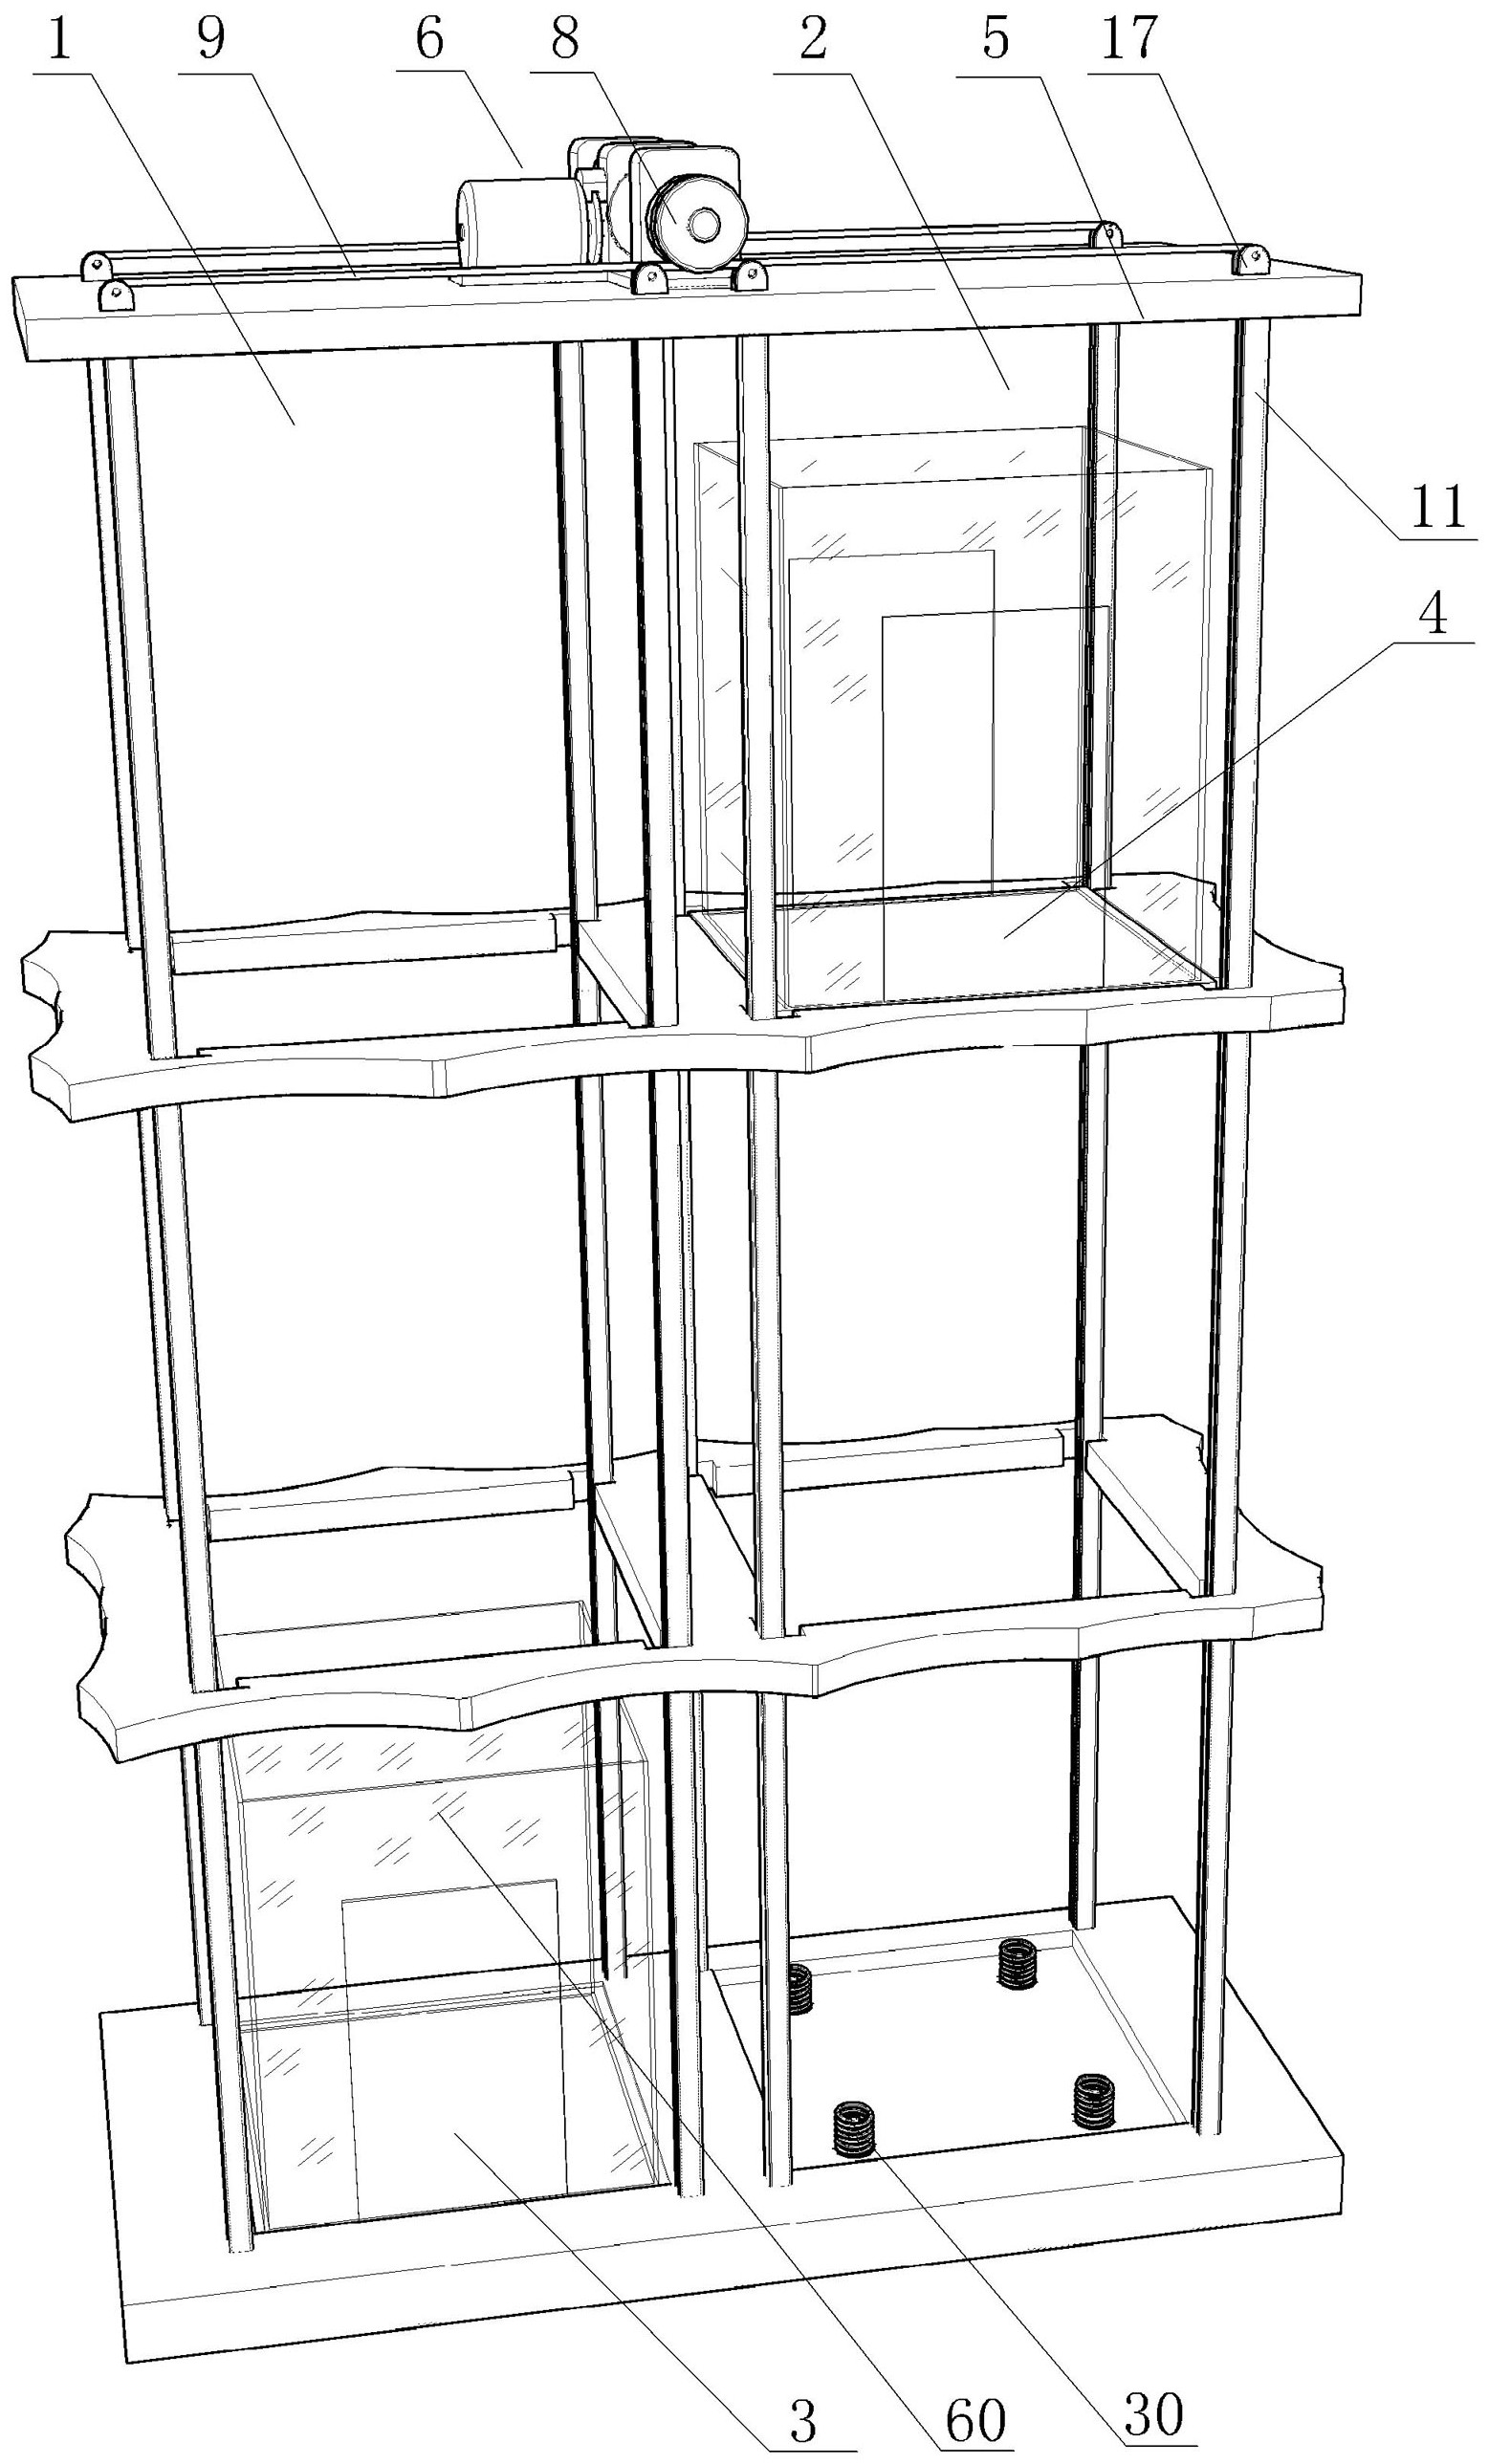 双向循环电梯专利图